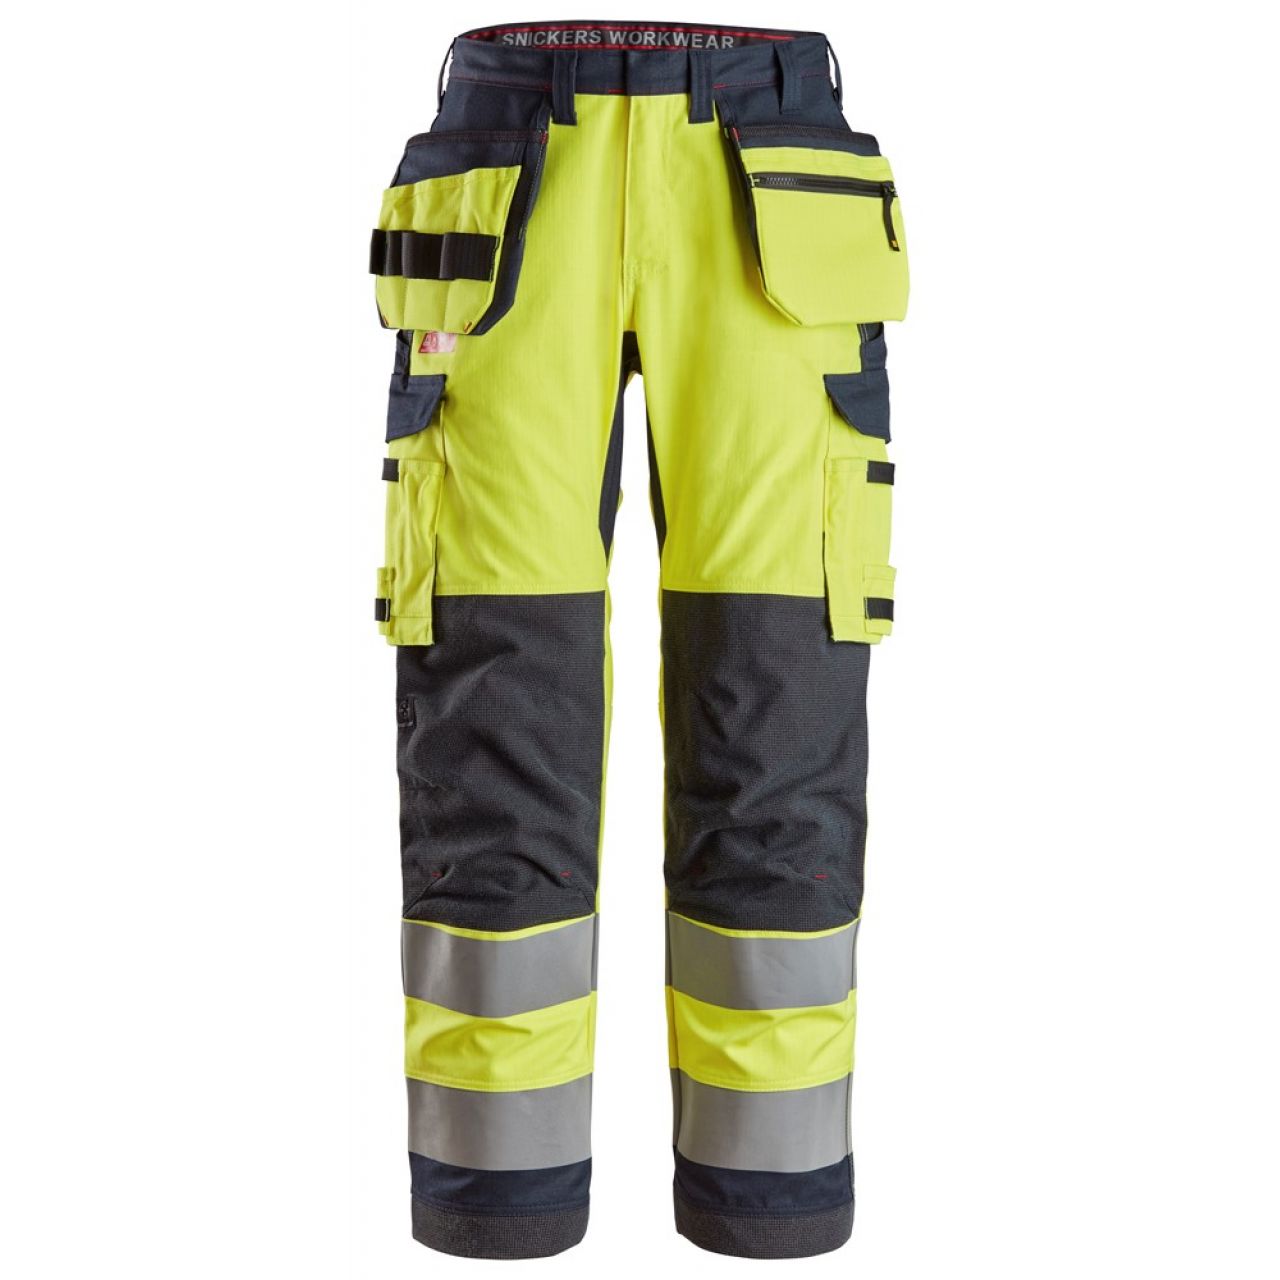 6261 Pantalones largos de trabajo de alta visibilidad clase 2 con bolsillos flotantes simétricos ProtecWork amarillo-azul marino talla 44